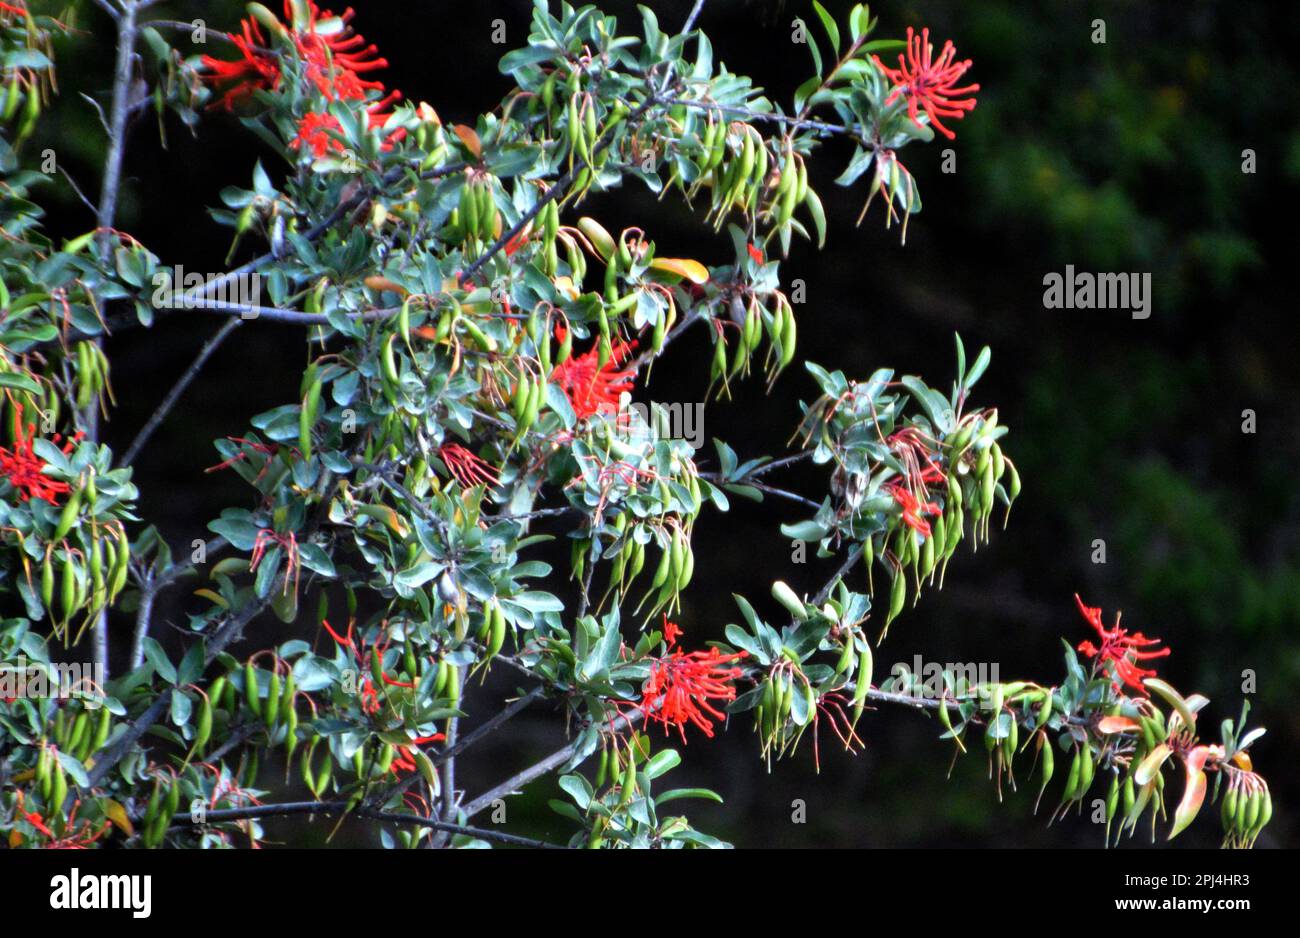 Chile, Puerto Rio Tranquilo: Scharlachblüten des chilenischen Feuerbuschs oder Ciruelillo (Embothrium coccineum). Stockfoto